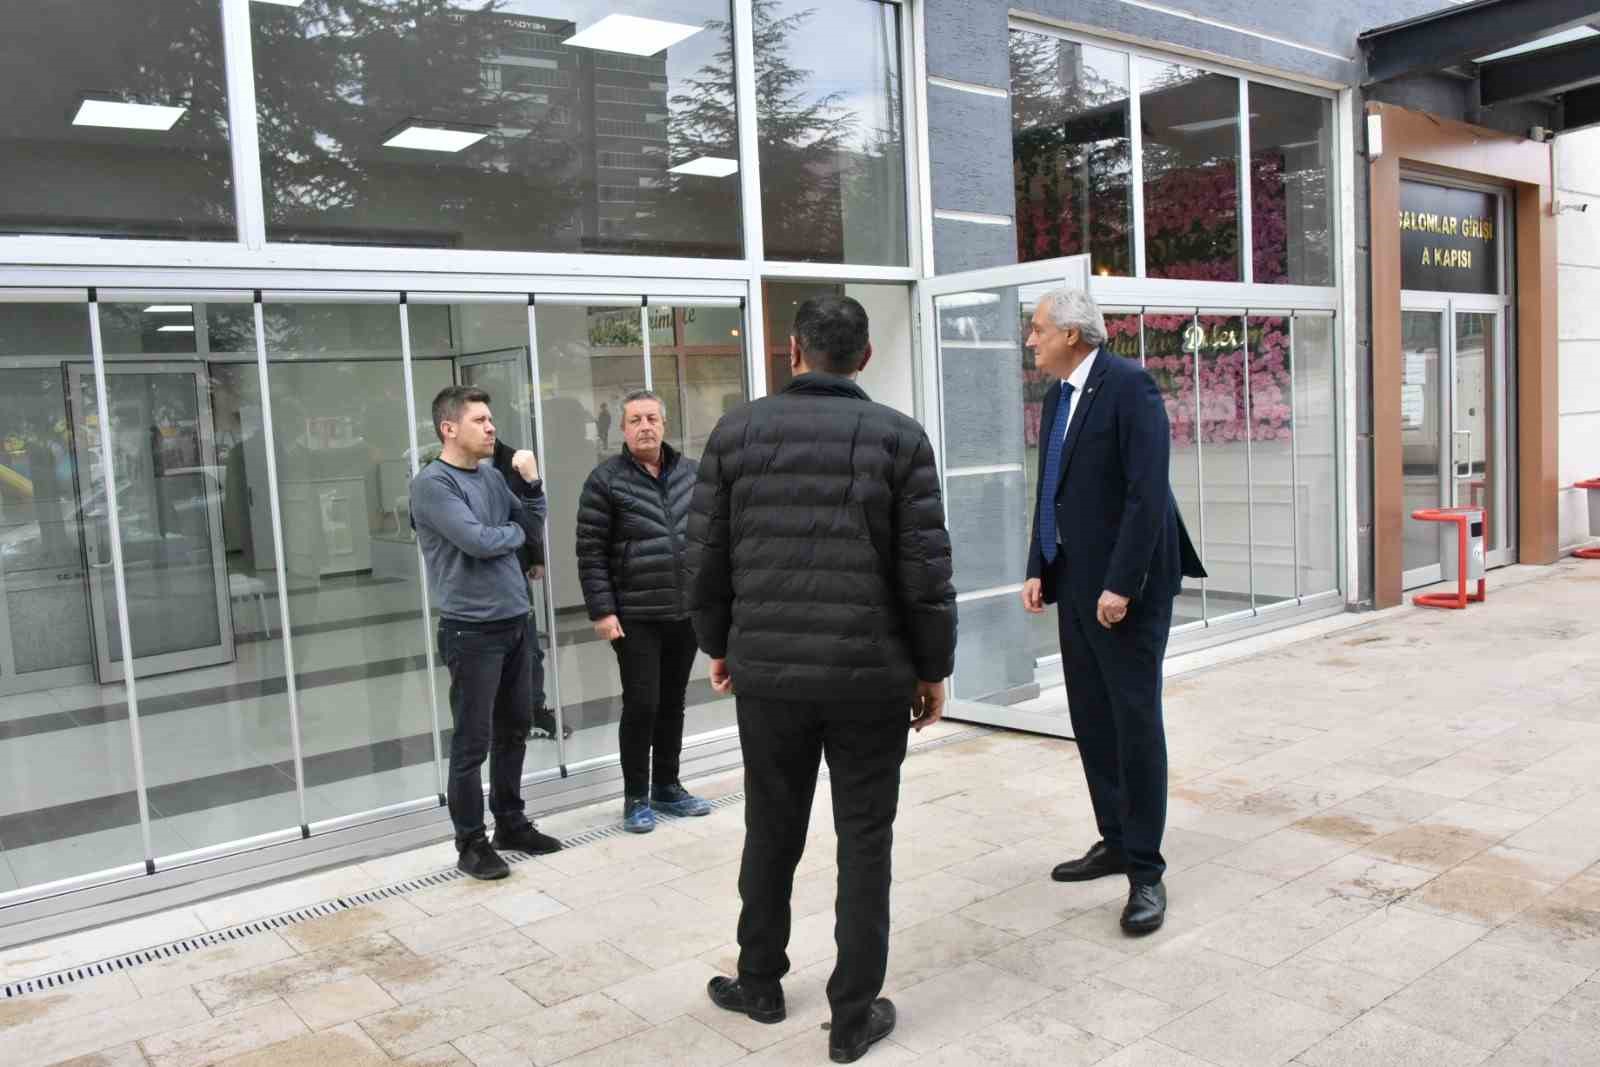 Başkan Bakkalcıoğlu’ndan yeni nikah salonunda son kontroller